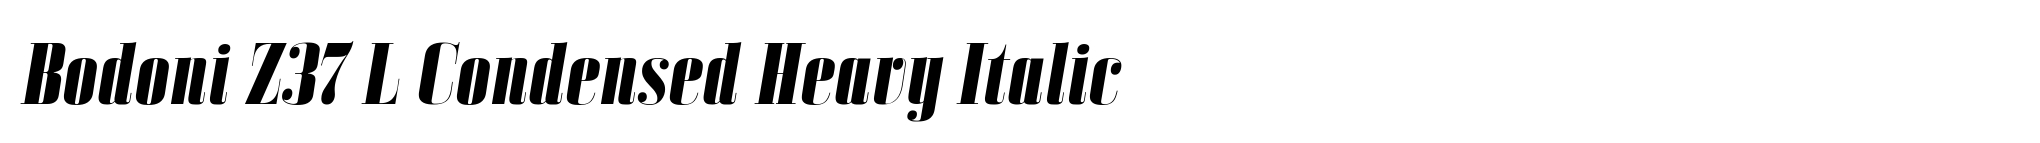 Bodoni Z37 L Condensed Heavy Italic image